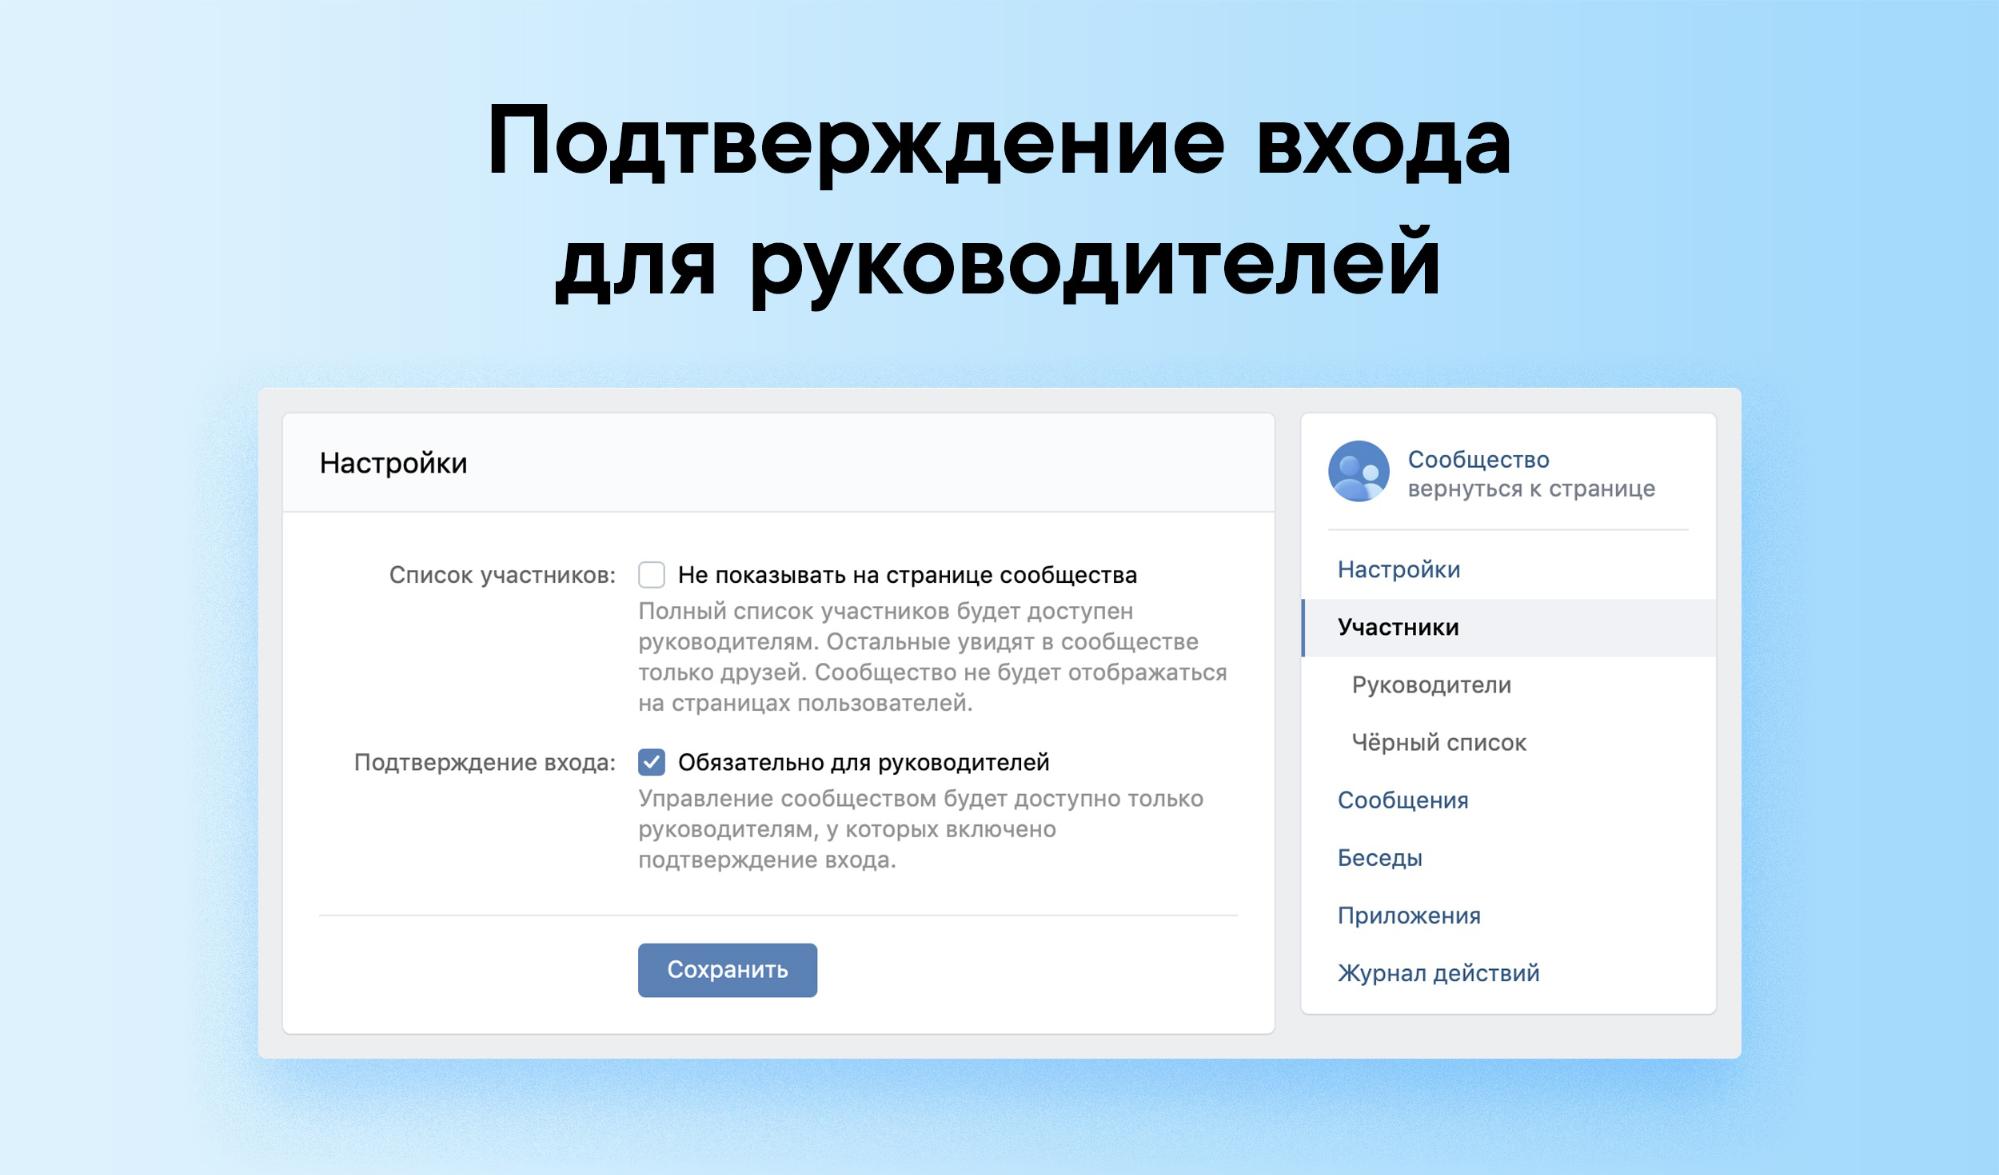 Как защитить Страницу бизнеса ВКонтакте - подтверждение пароля для руководителей